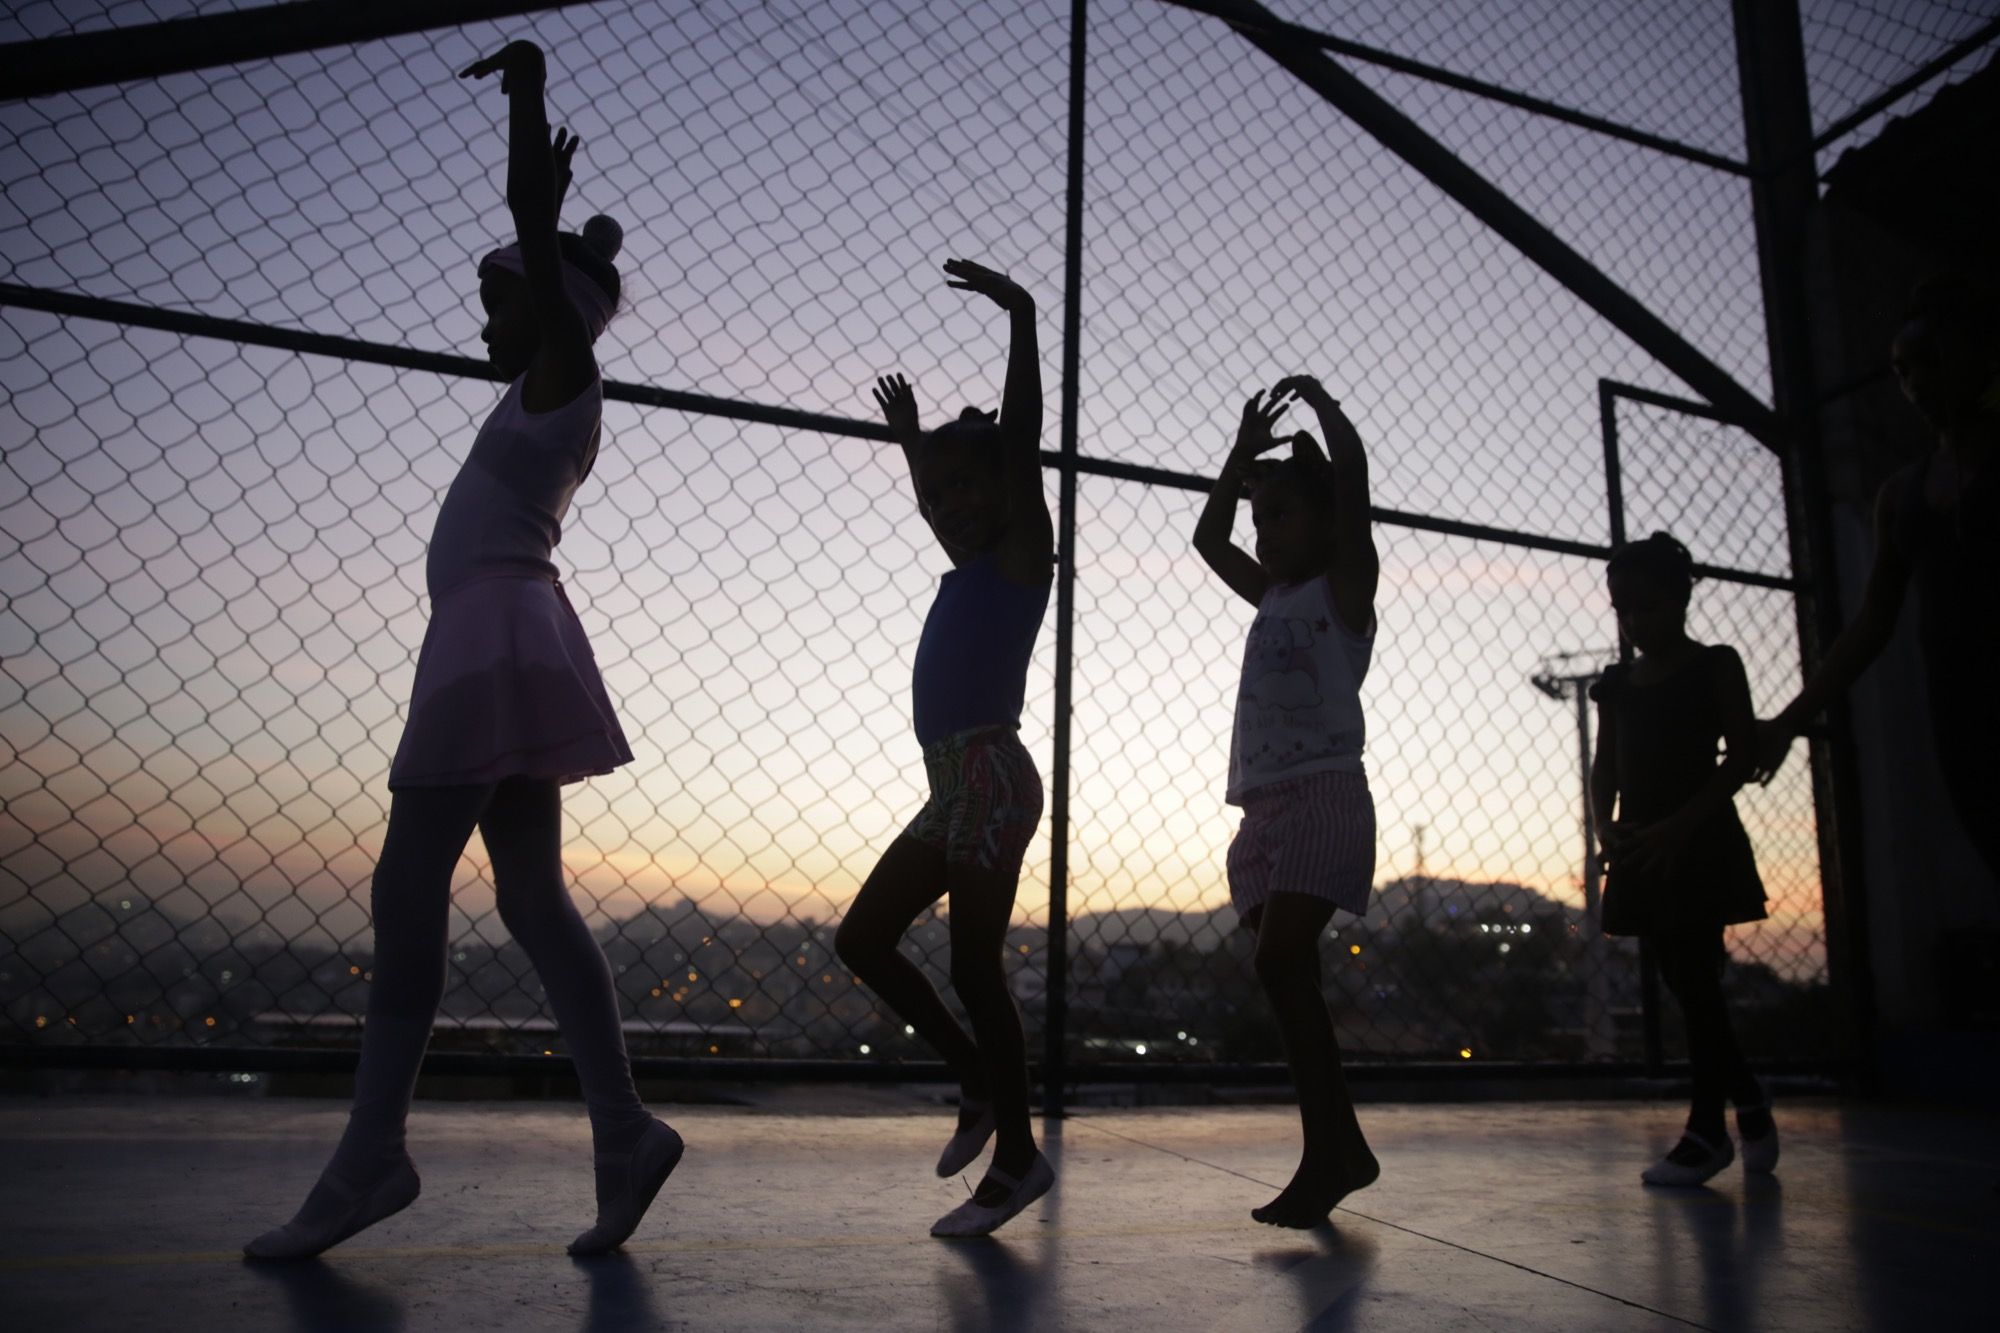 Young ballerinas rehearse at an outdoor sports court in the Morro do Adeus favela, Rio de Janeiro. Image by Frederick Bernas. Brazil, 2018.